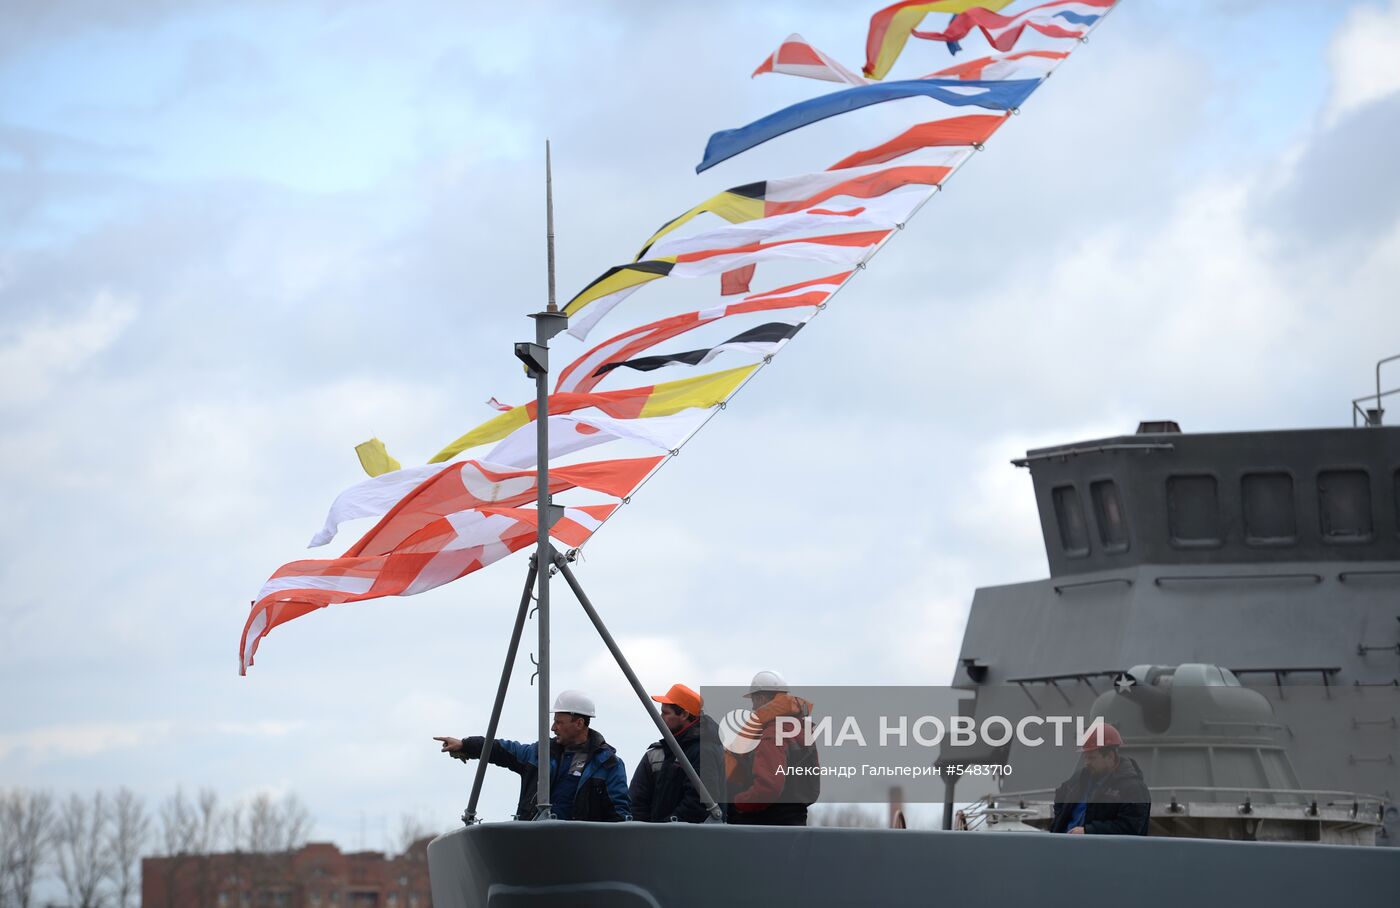 Спуск на воду корабля противоминной обороны «Иван Антонов» в Санкт-Петербурге